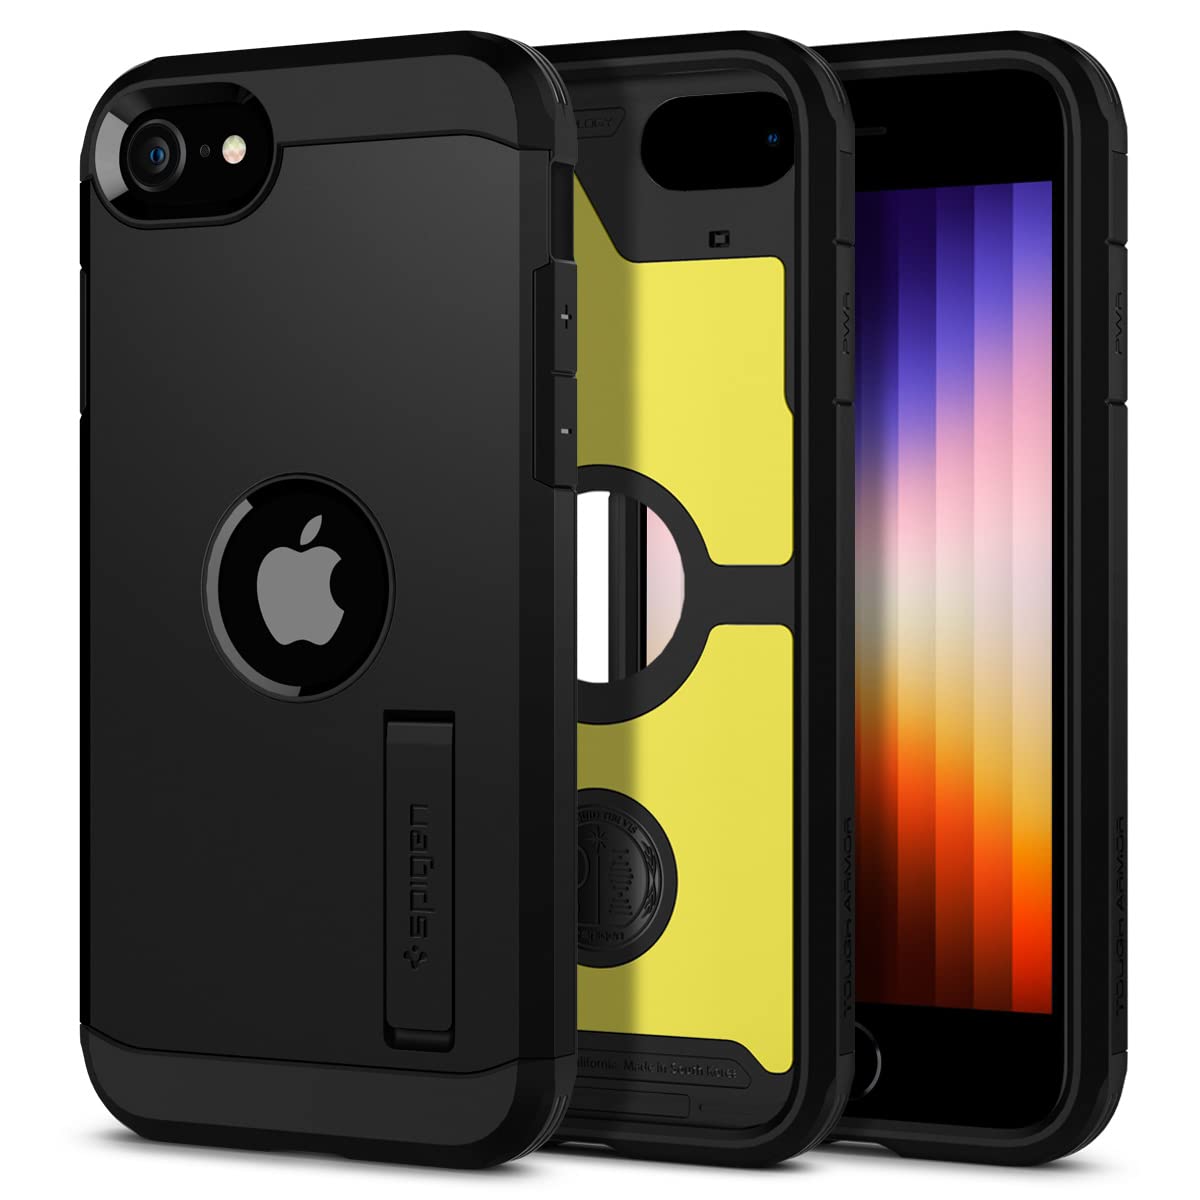 Spigen Tough Armor [Extreme Protection Tech] Designed for iPhone SE 2022 Case / iPhone SE 3 Case 2022 / iPhone SE 2020 Case / iPhone 8 Case / iPhone 7 Case - Black